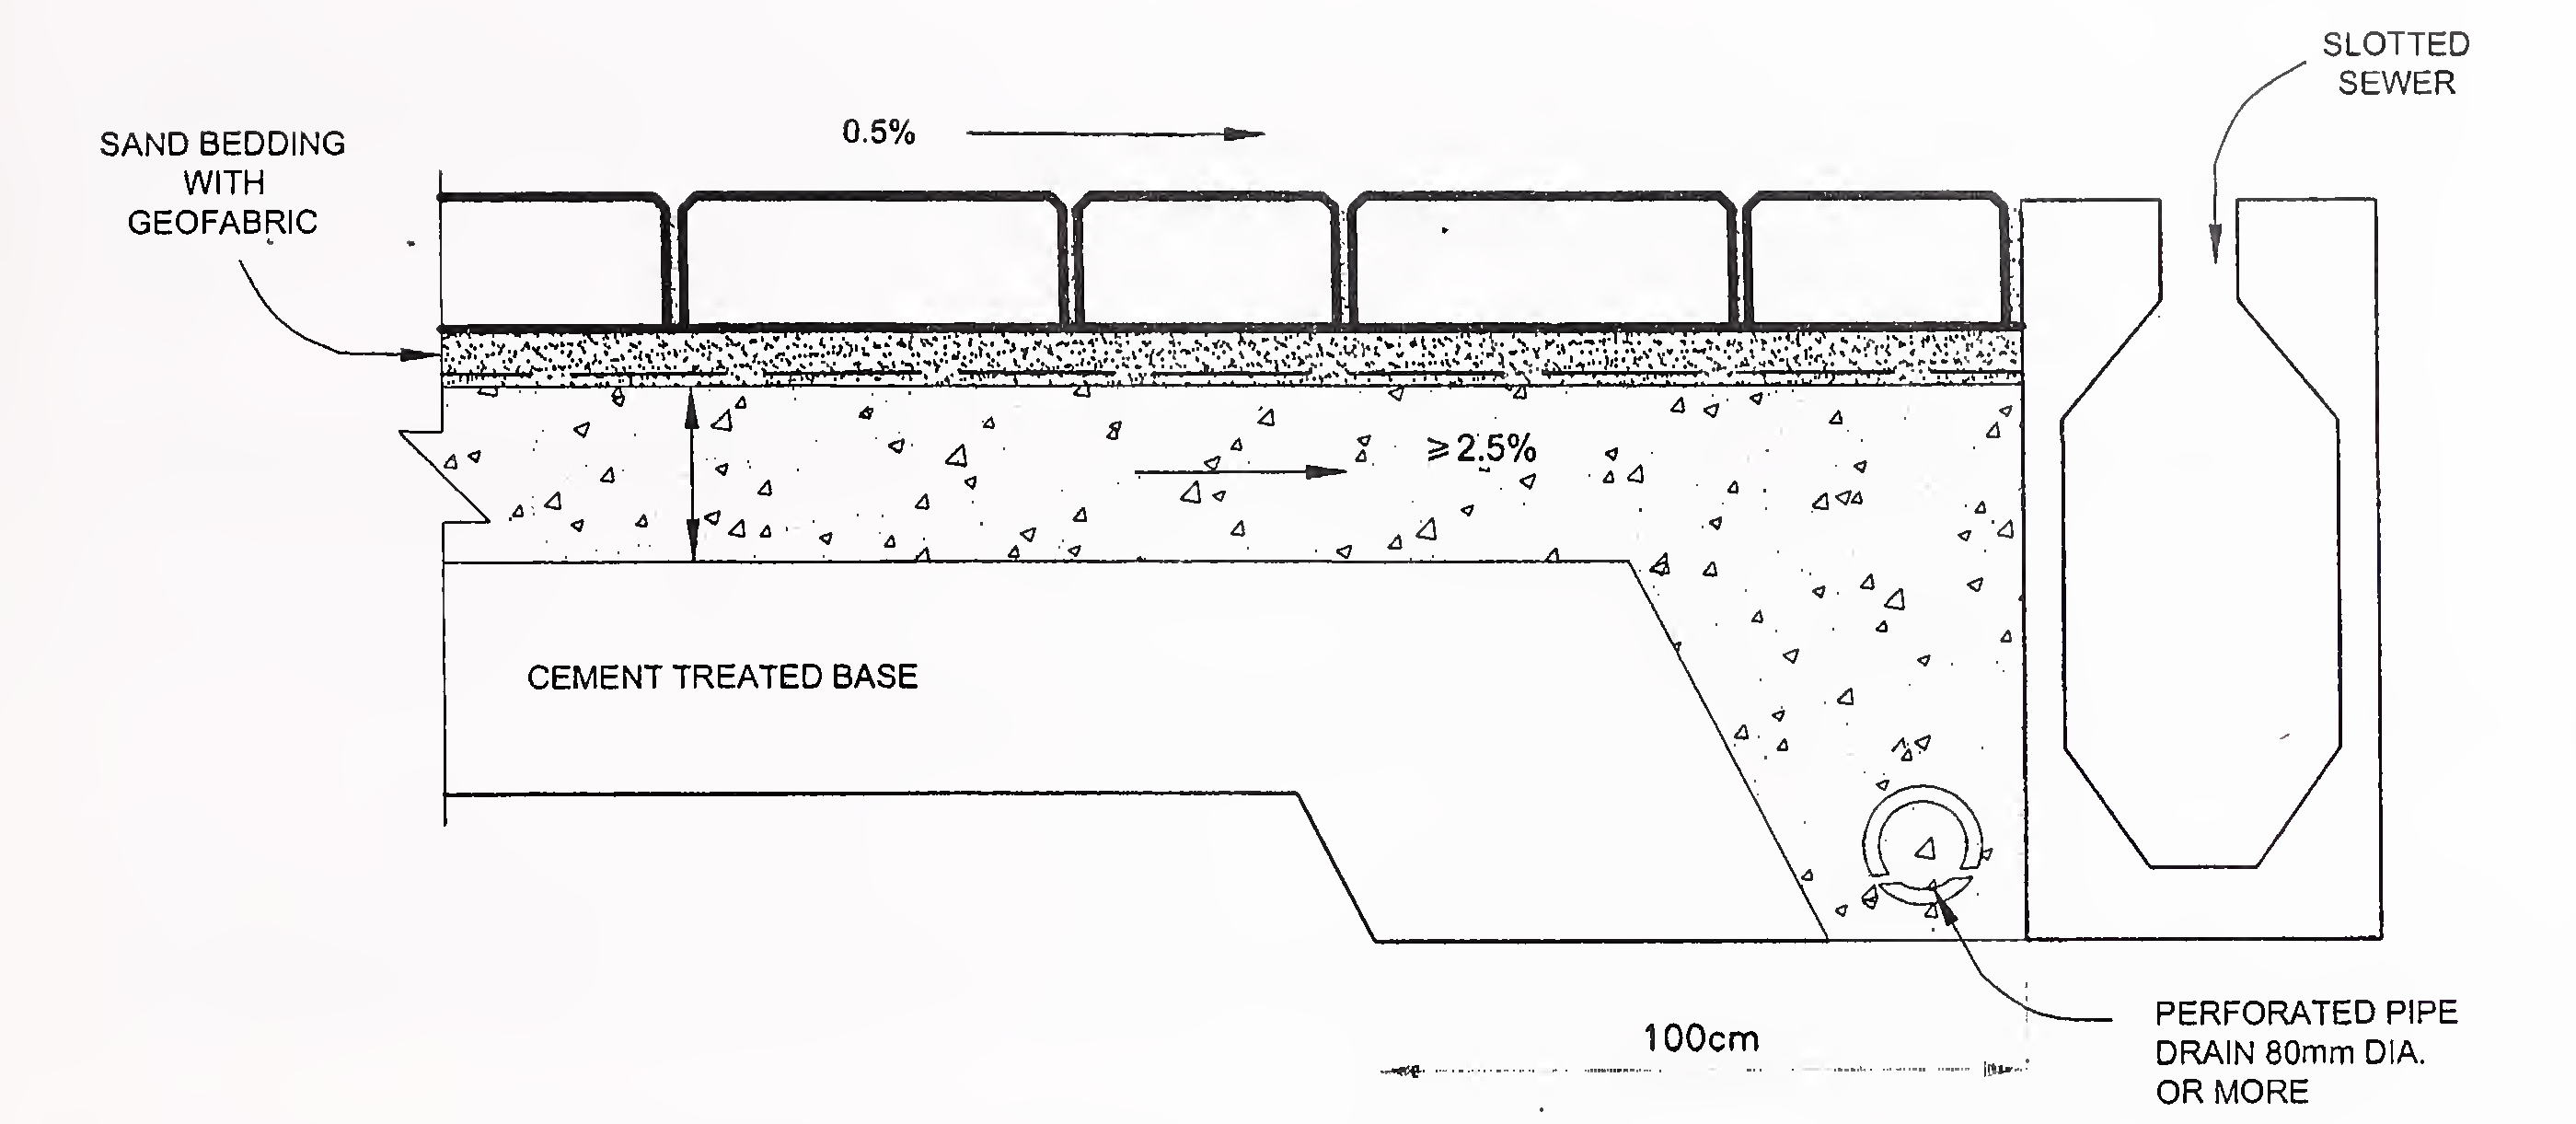 अंजीर 11. बेस कोर्ससह अवजड ट्रॅफिक कॉंक्रिट ब्लॉक फुटपाथ रचना